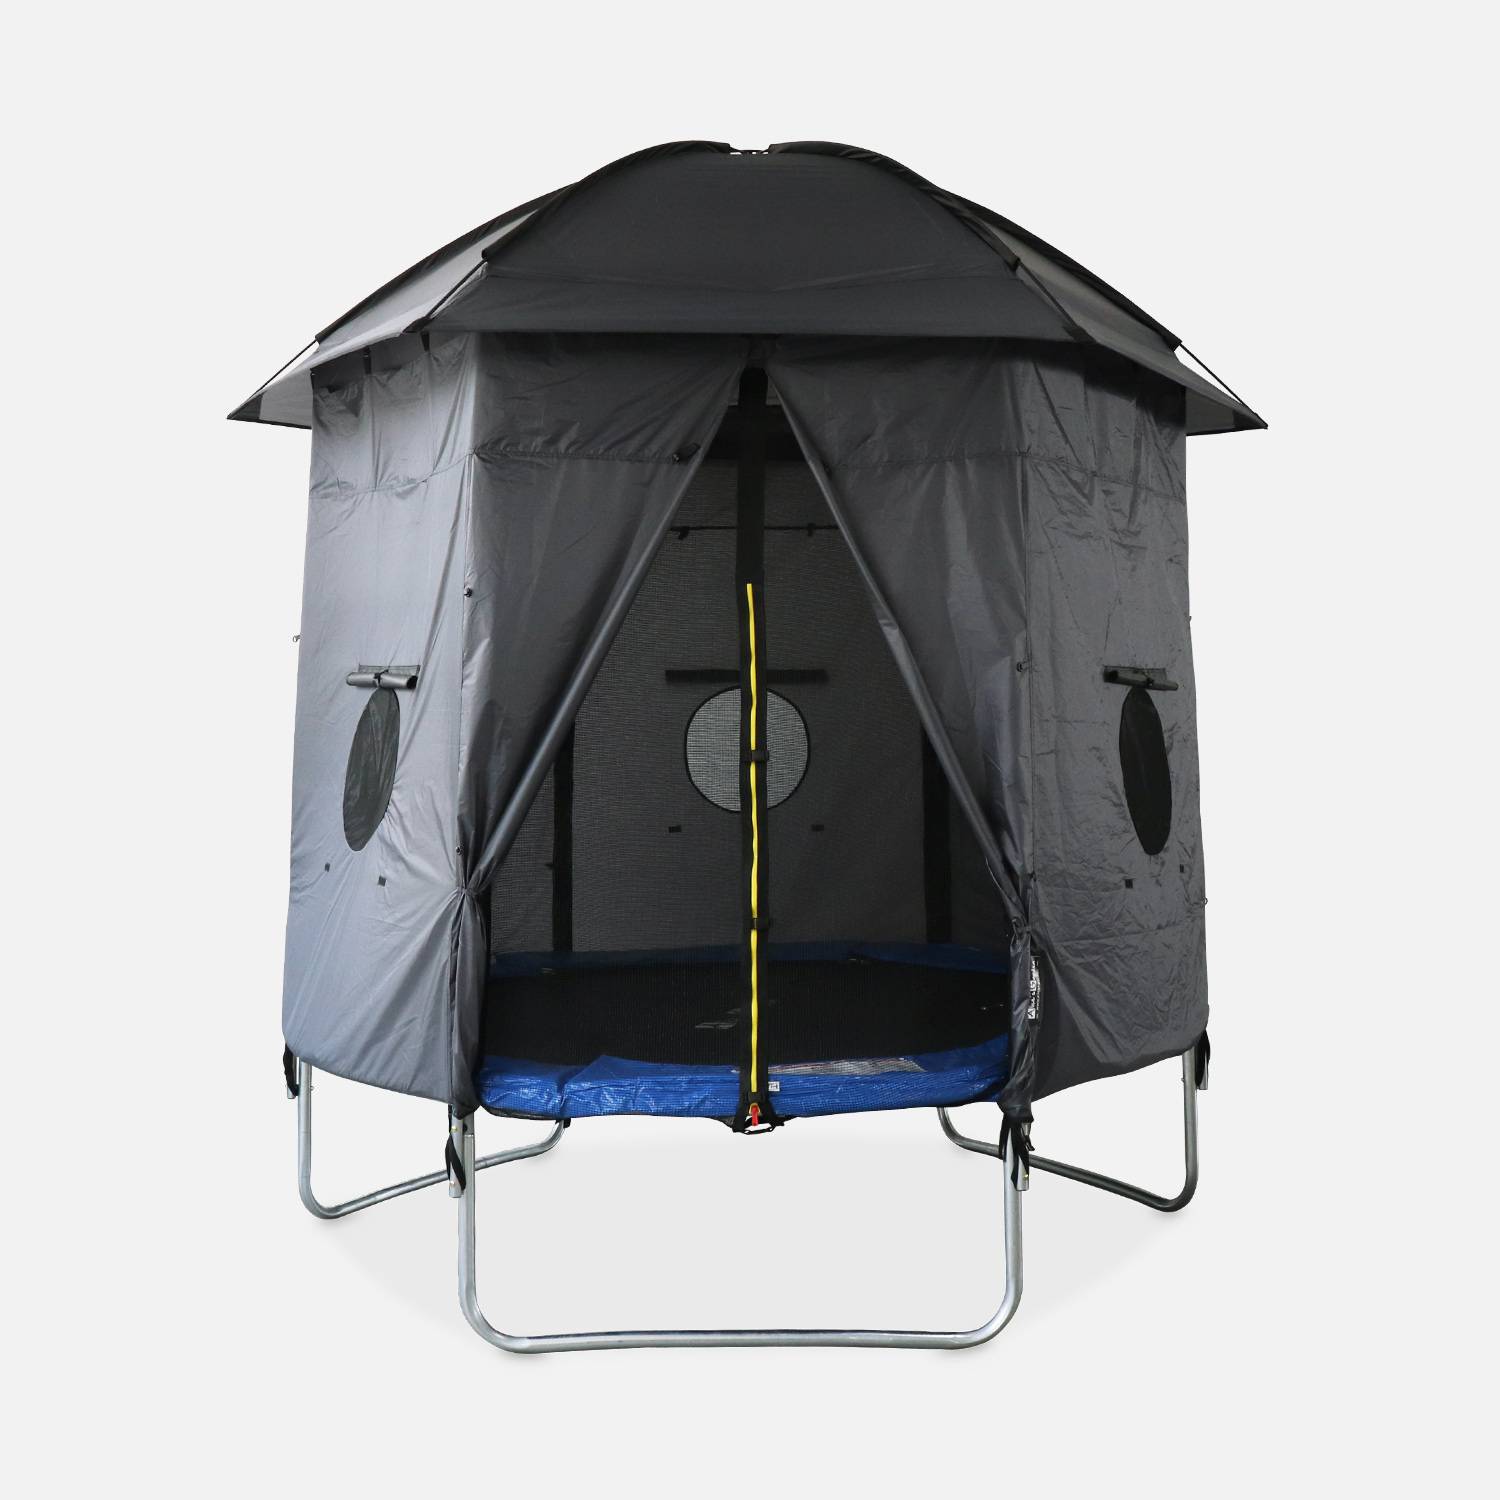 Campingzelt für Trampolin, Trampolihnütte, Polyester, UV-behandelt, 1 Tür, 3 Fenster und Transporttasche Photo2